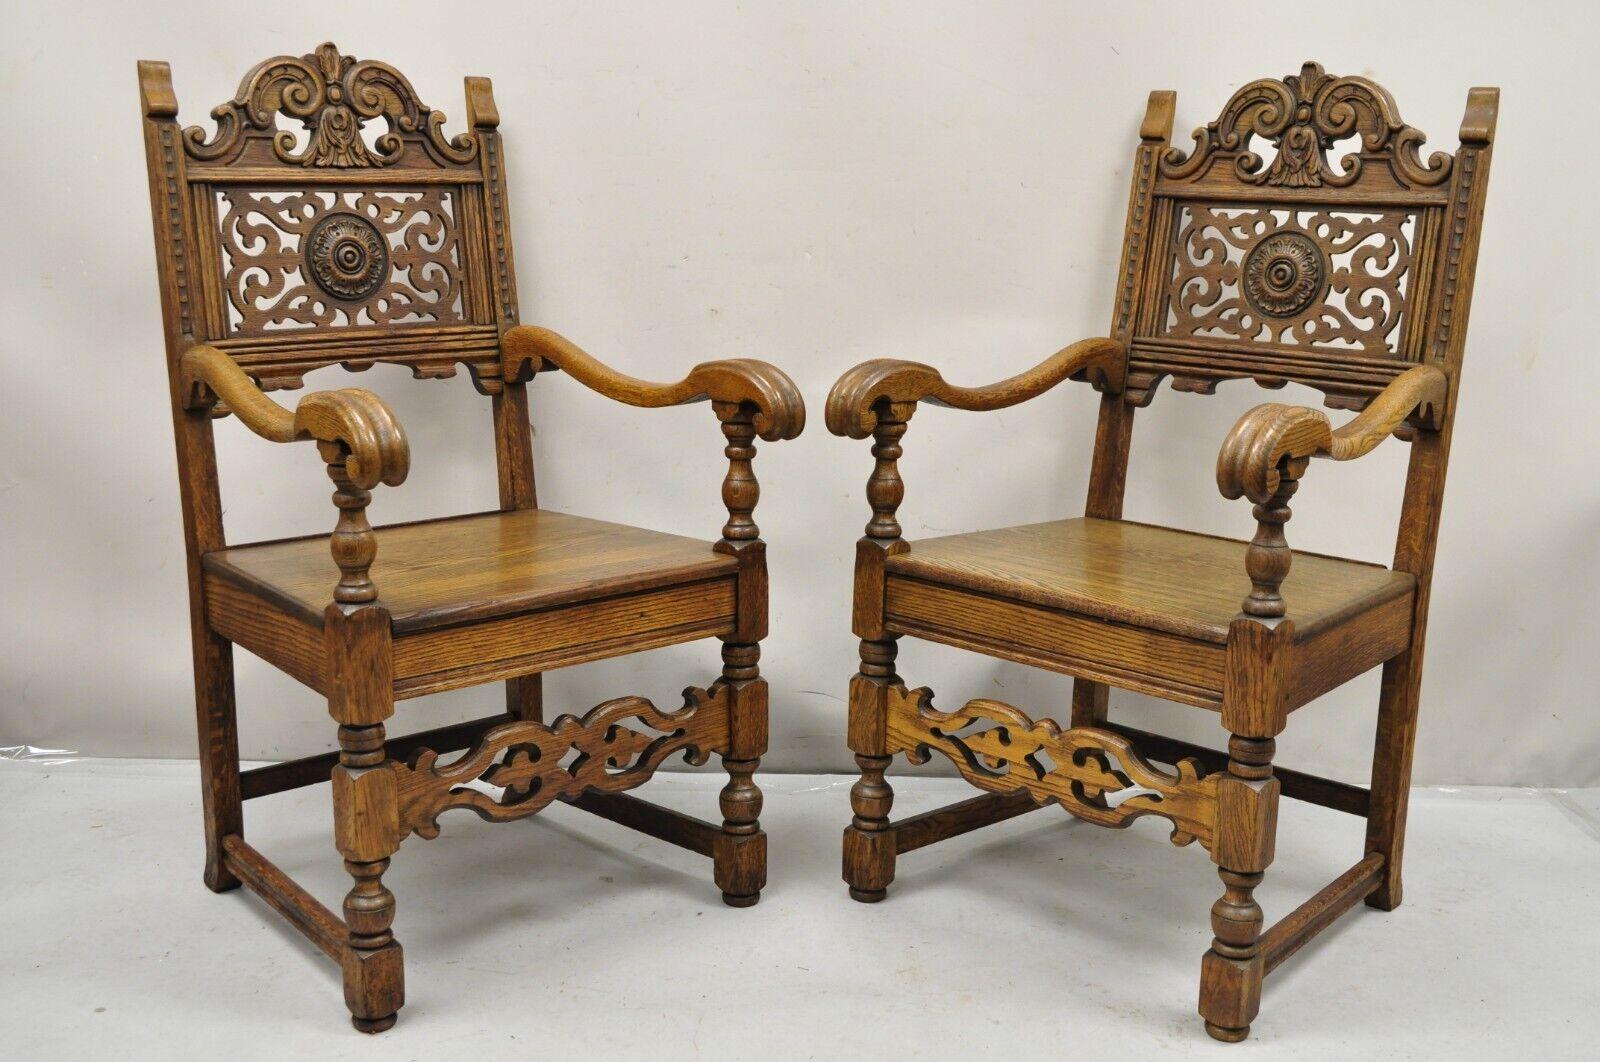 Antique Vanleigh Furniture New York chêne sculpté style renaissance italienne chaises à accoudoirs trône - une paire. L'article comporte l'étiquette d'origine, une construction en bois de chêne massif, un magnifique grain de bois, une très belle